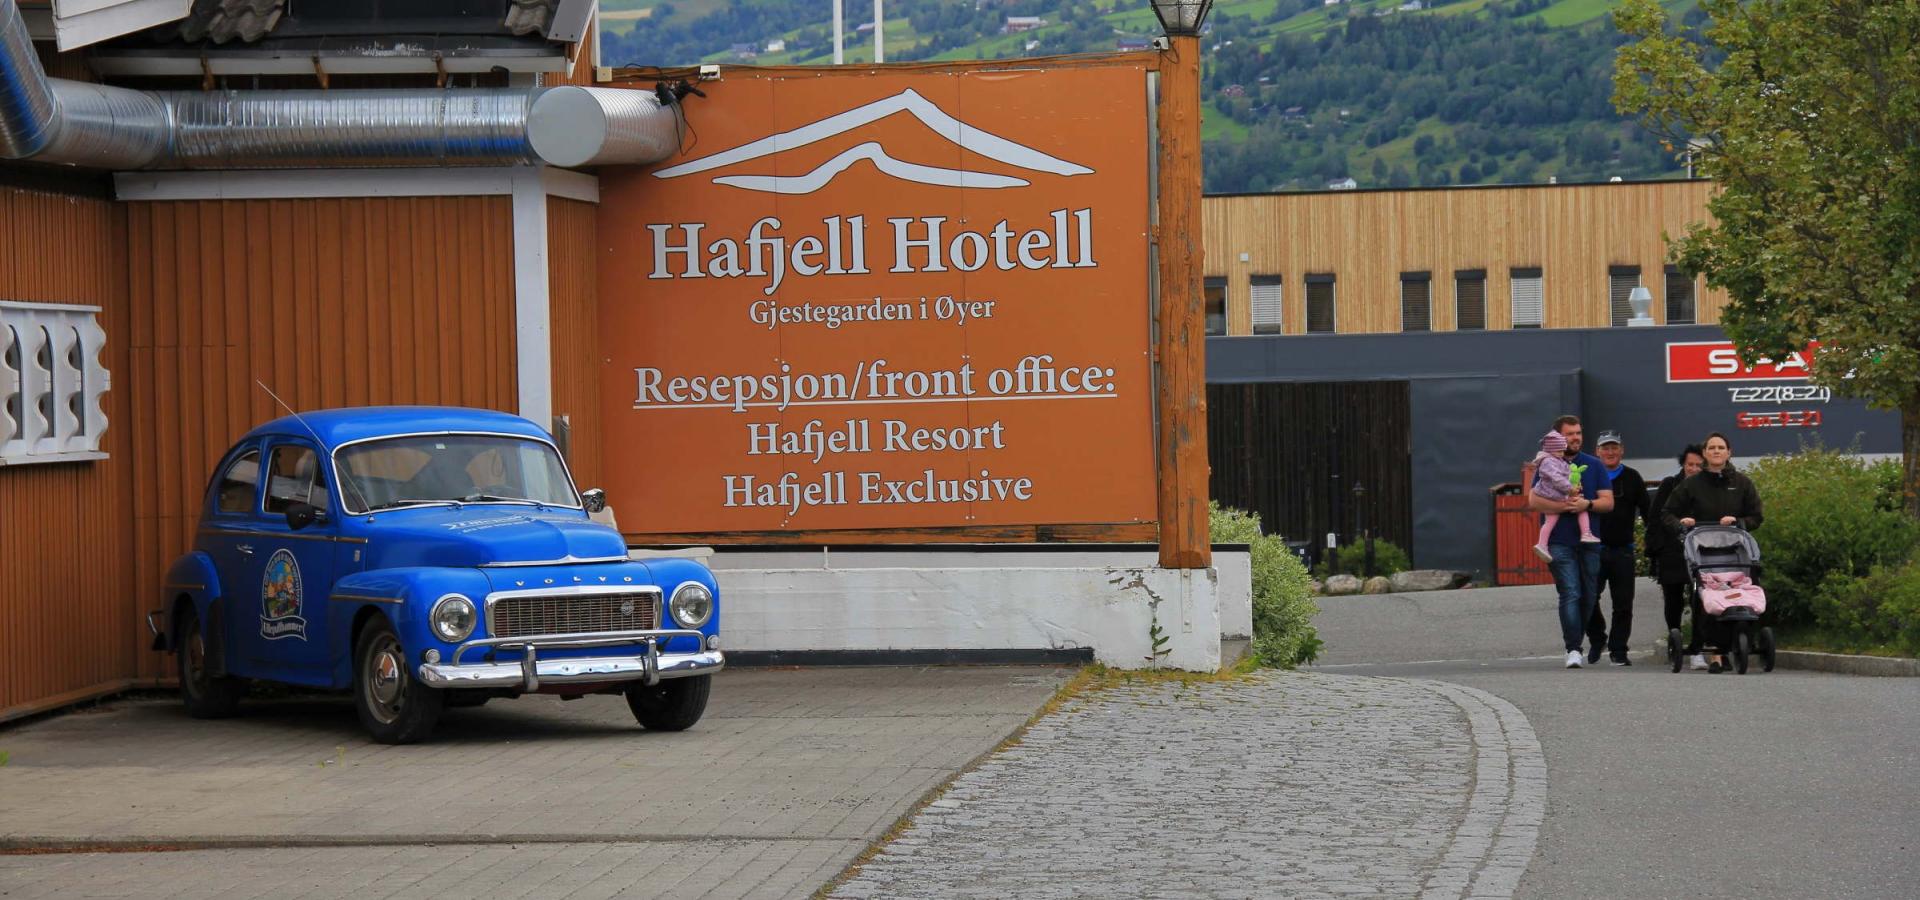 Velkommen til Hafjell Hotell